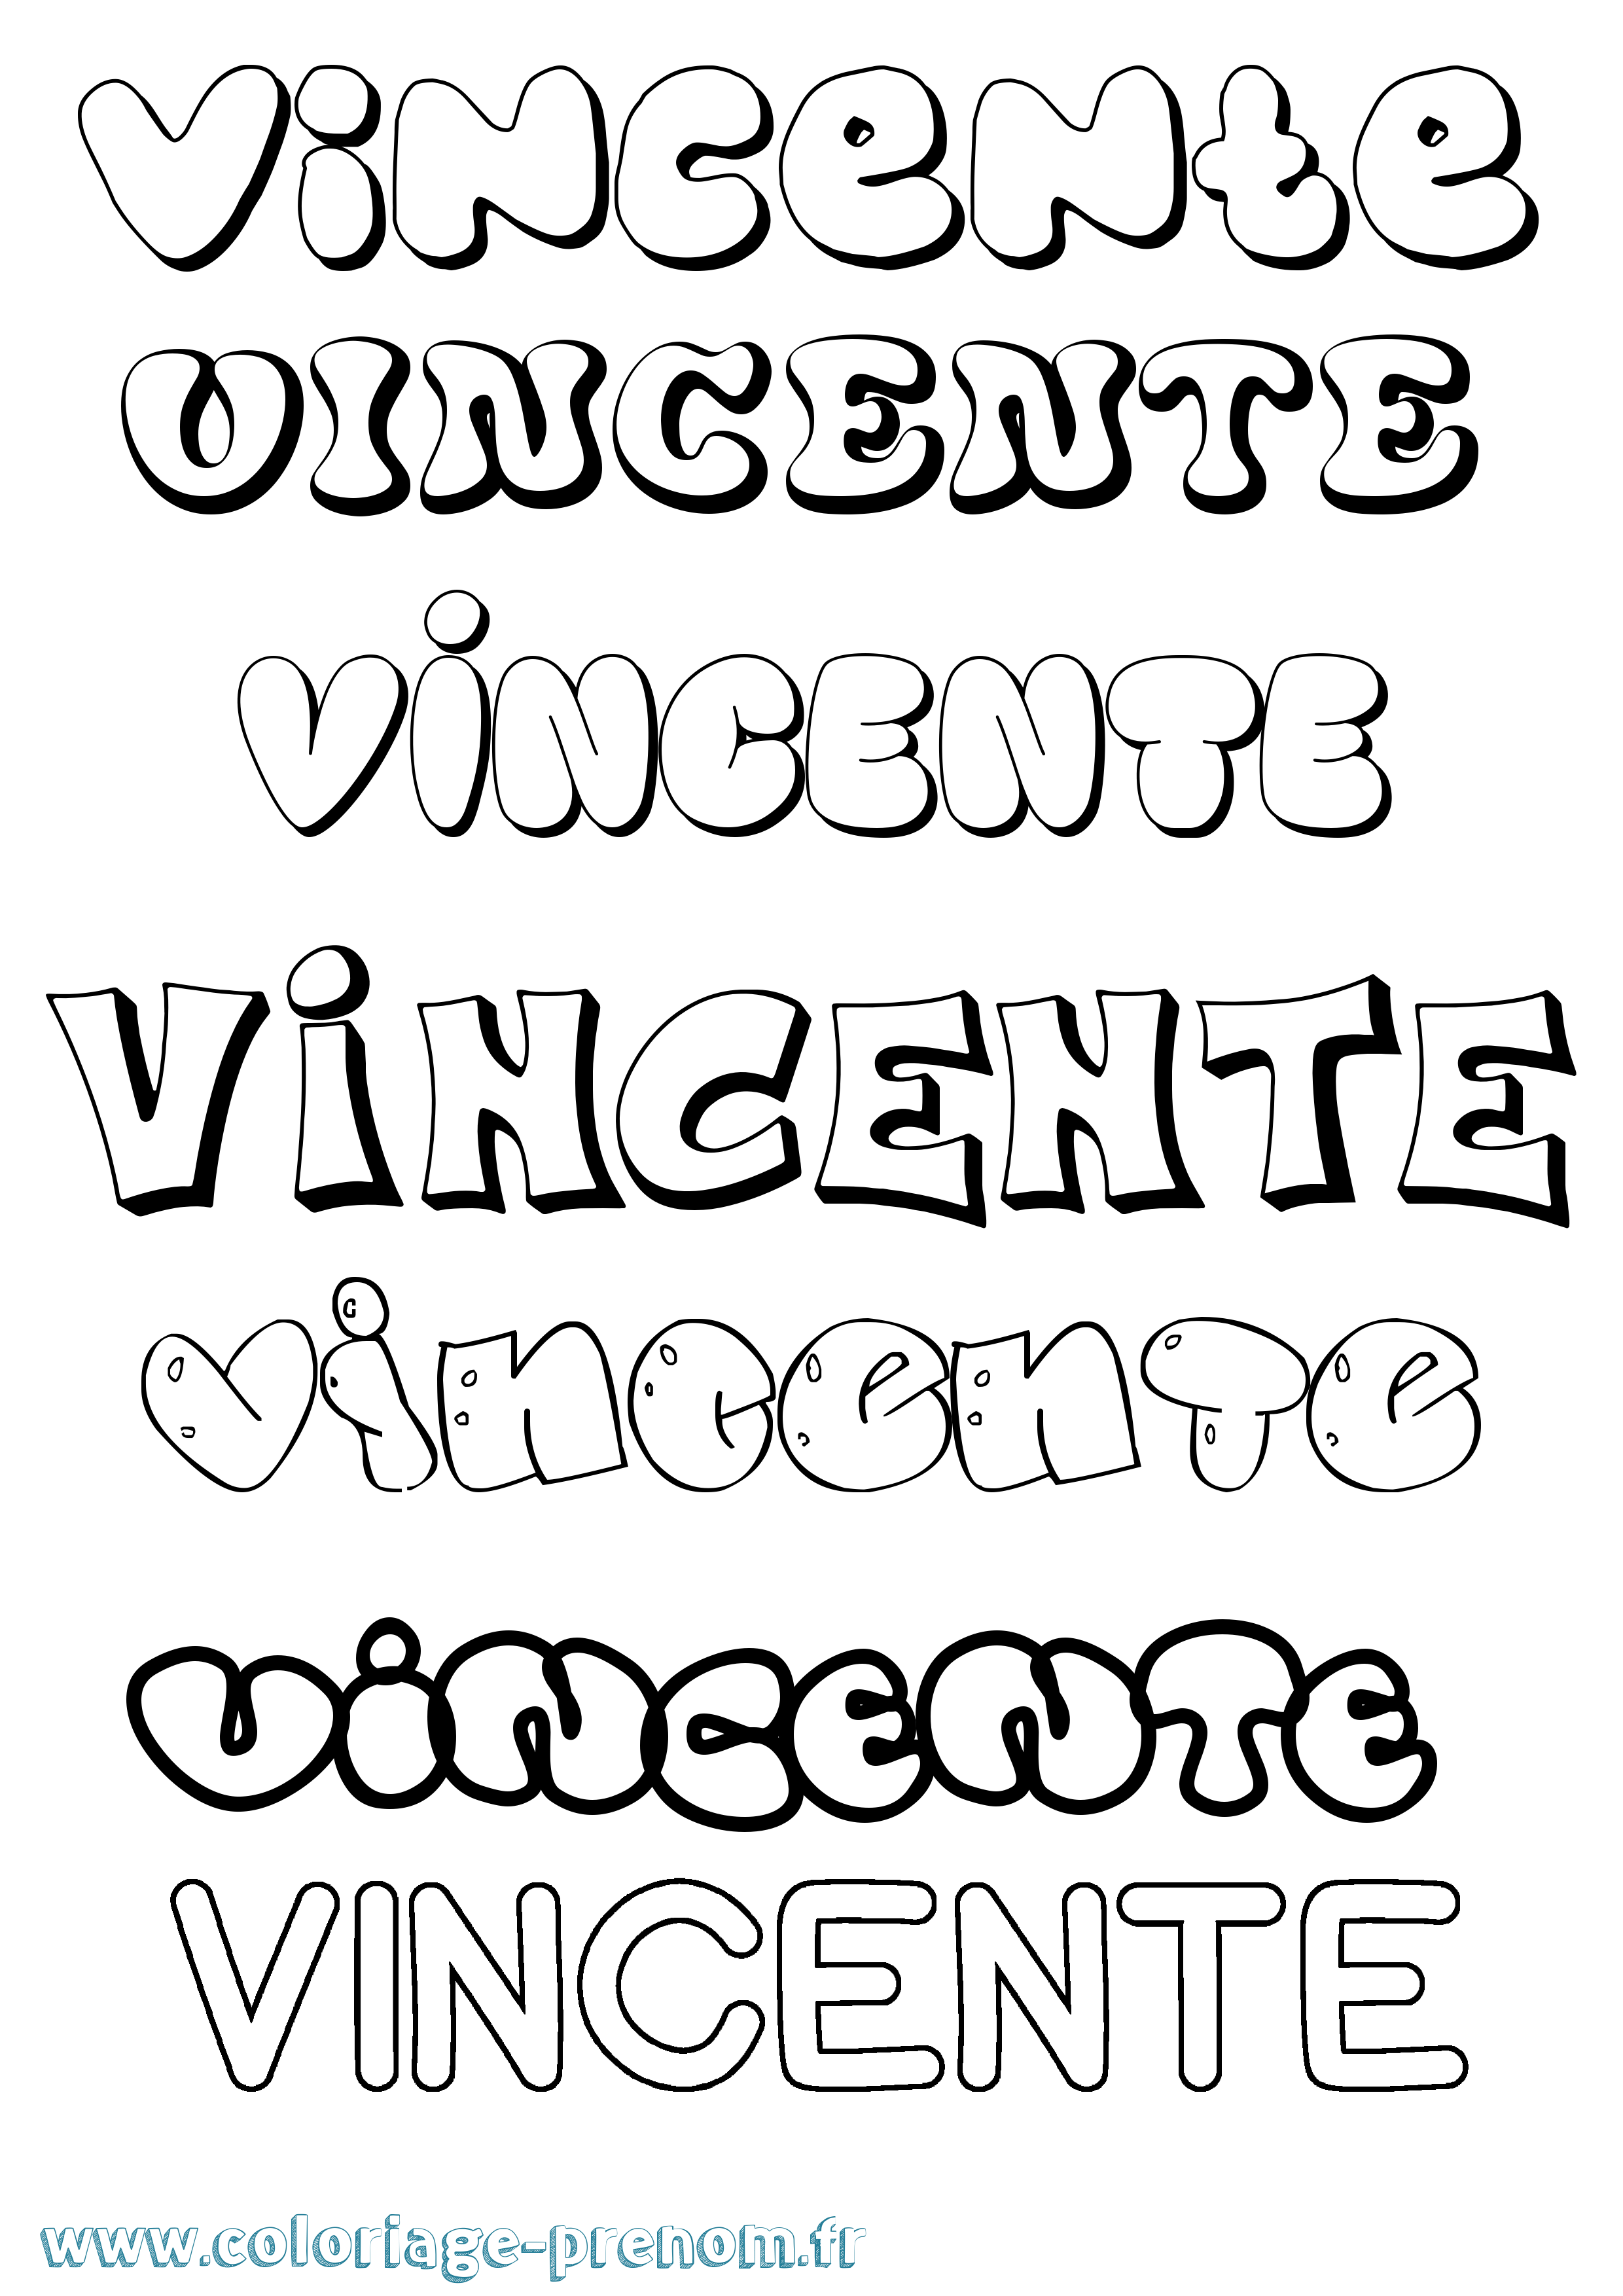 Coloriage prénom Vincente Bubble